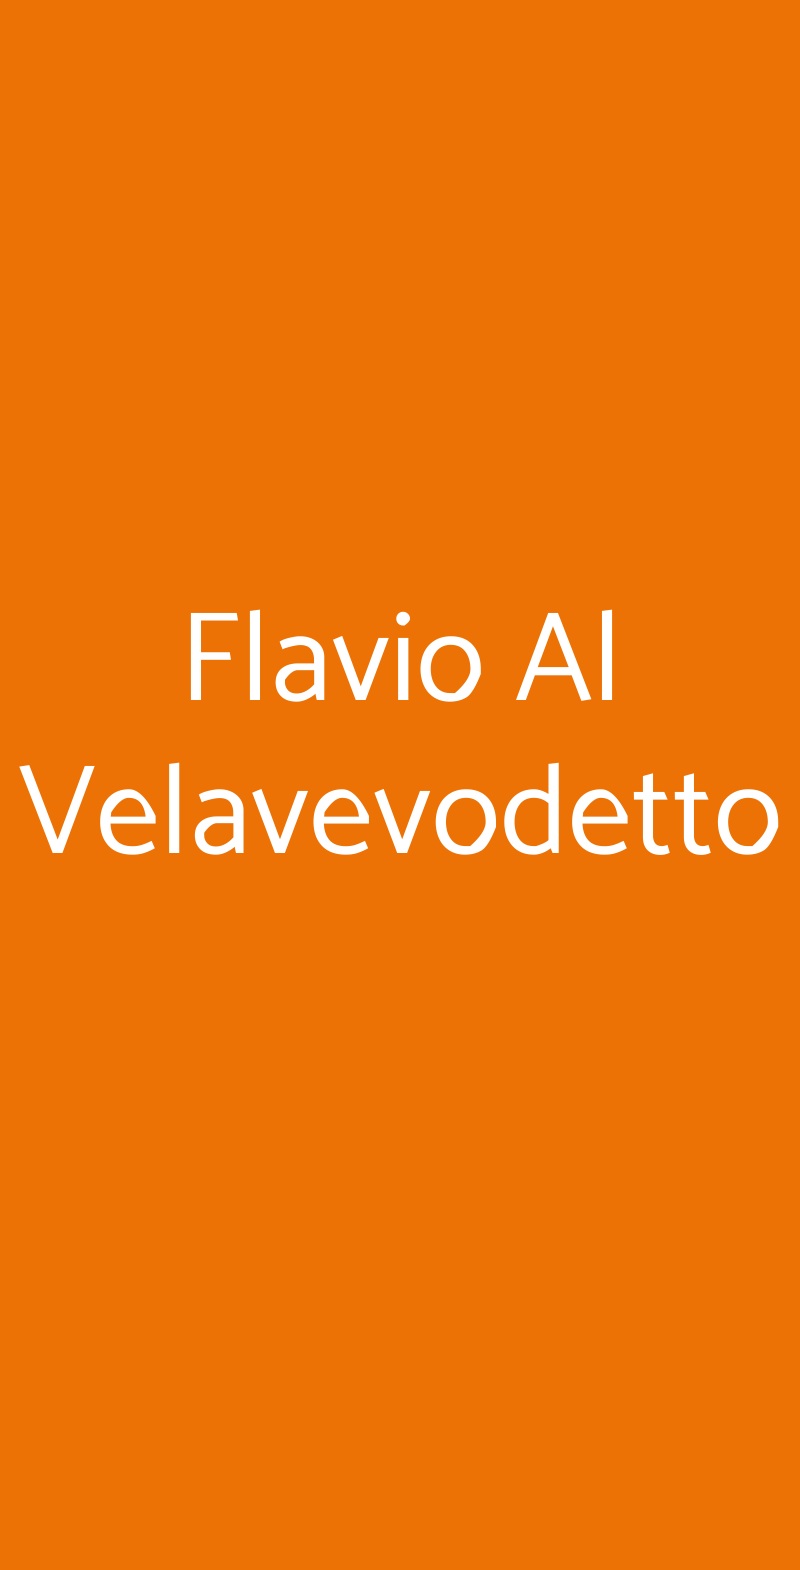 Flavio Al Velavevodetto Roma menù 1 pagina